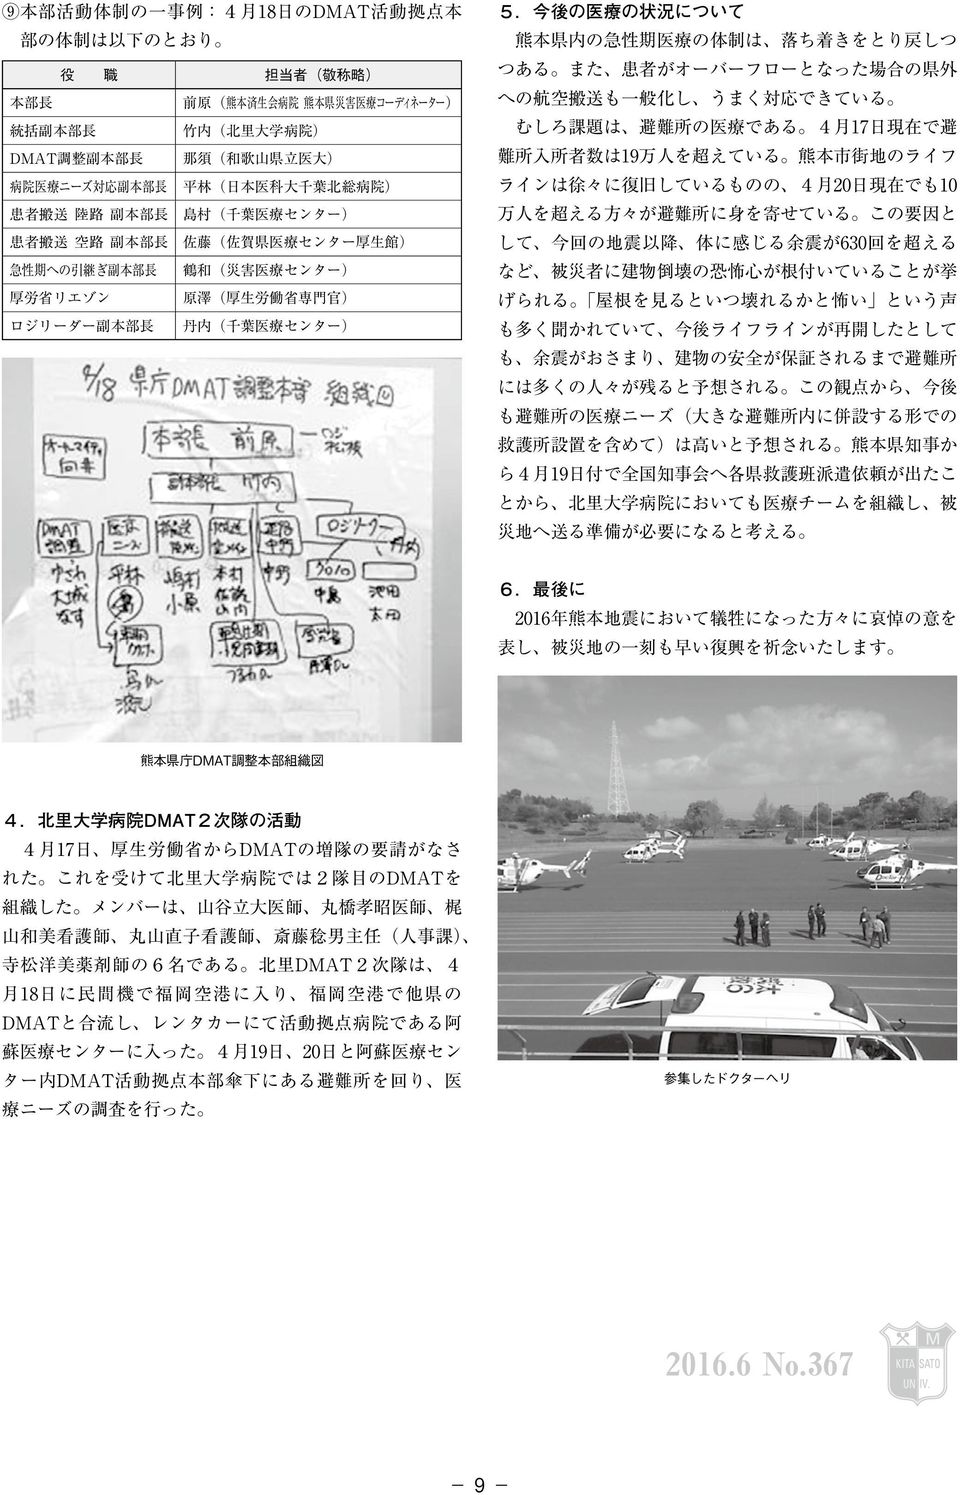 最 後 に 熊 本 県 庁 DMAT 調 整 本 部 組 織 図 4.